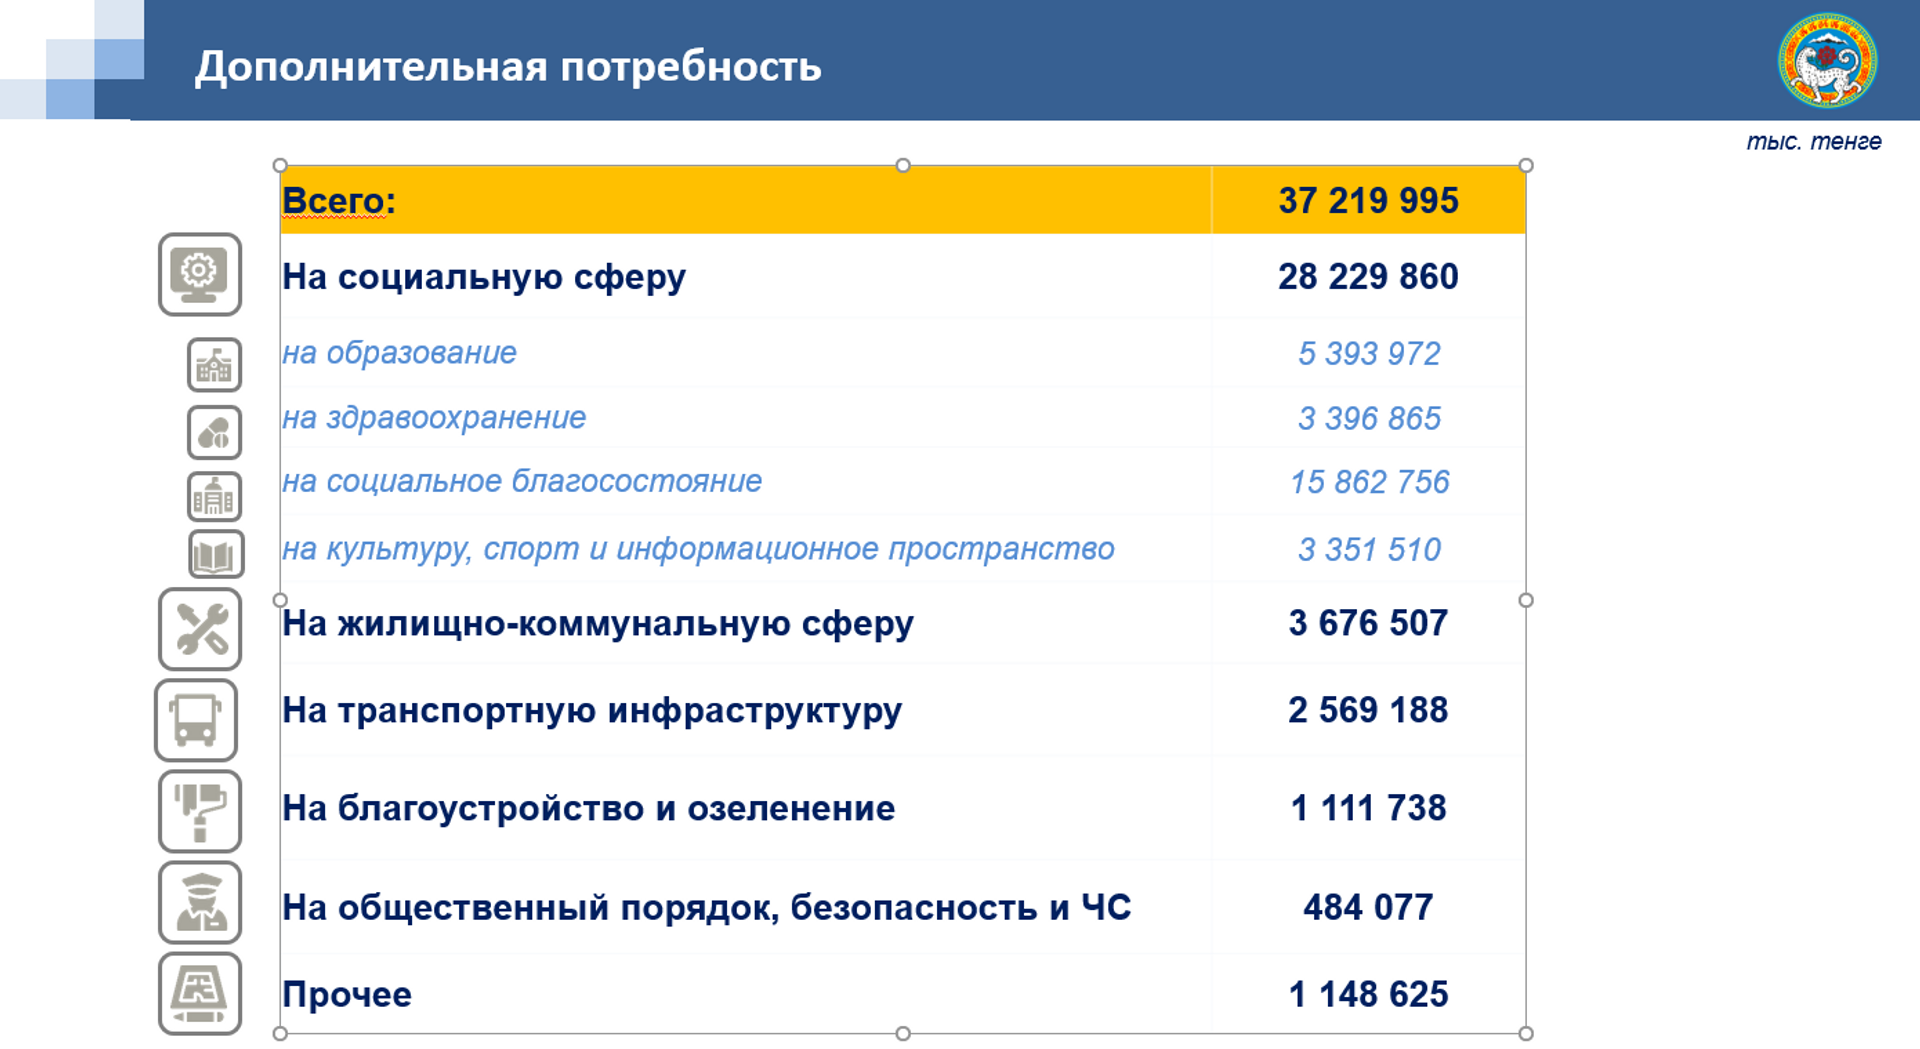 Бюджет Алматы скорректировали на 37,2 миллиарда тенге – на что потратят деньги - Sputnik Казахстан, 1920, 27.08.2021